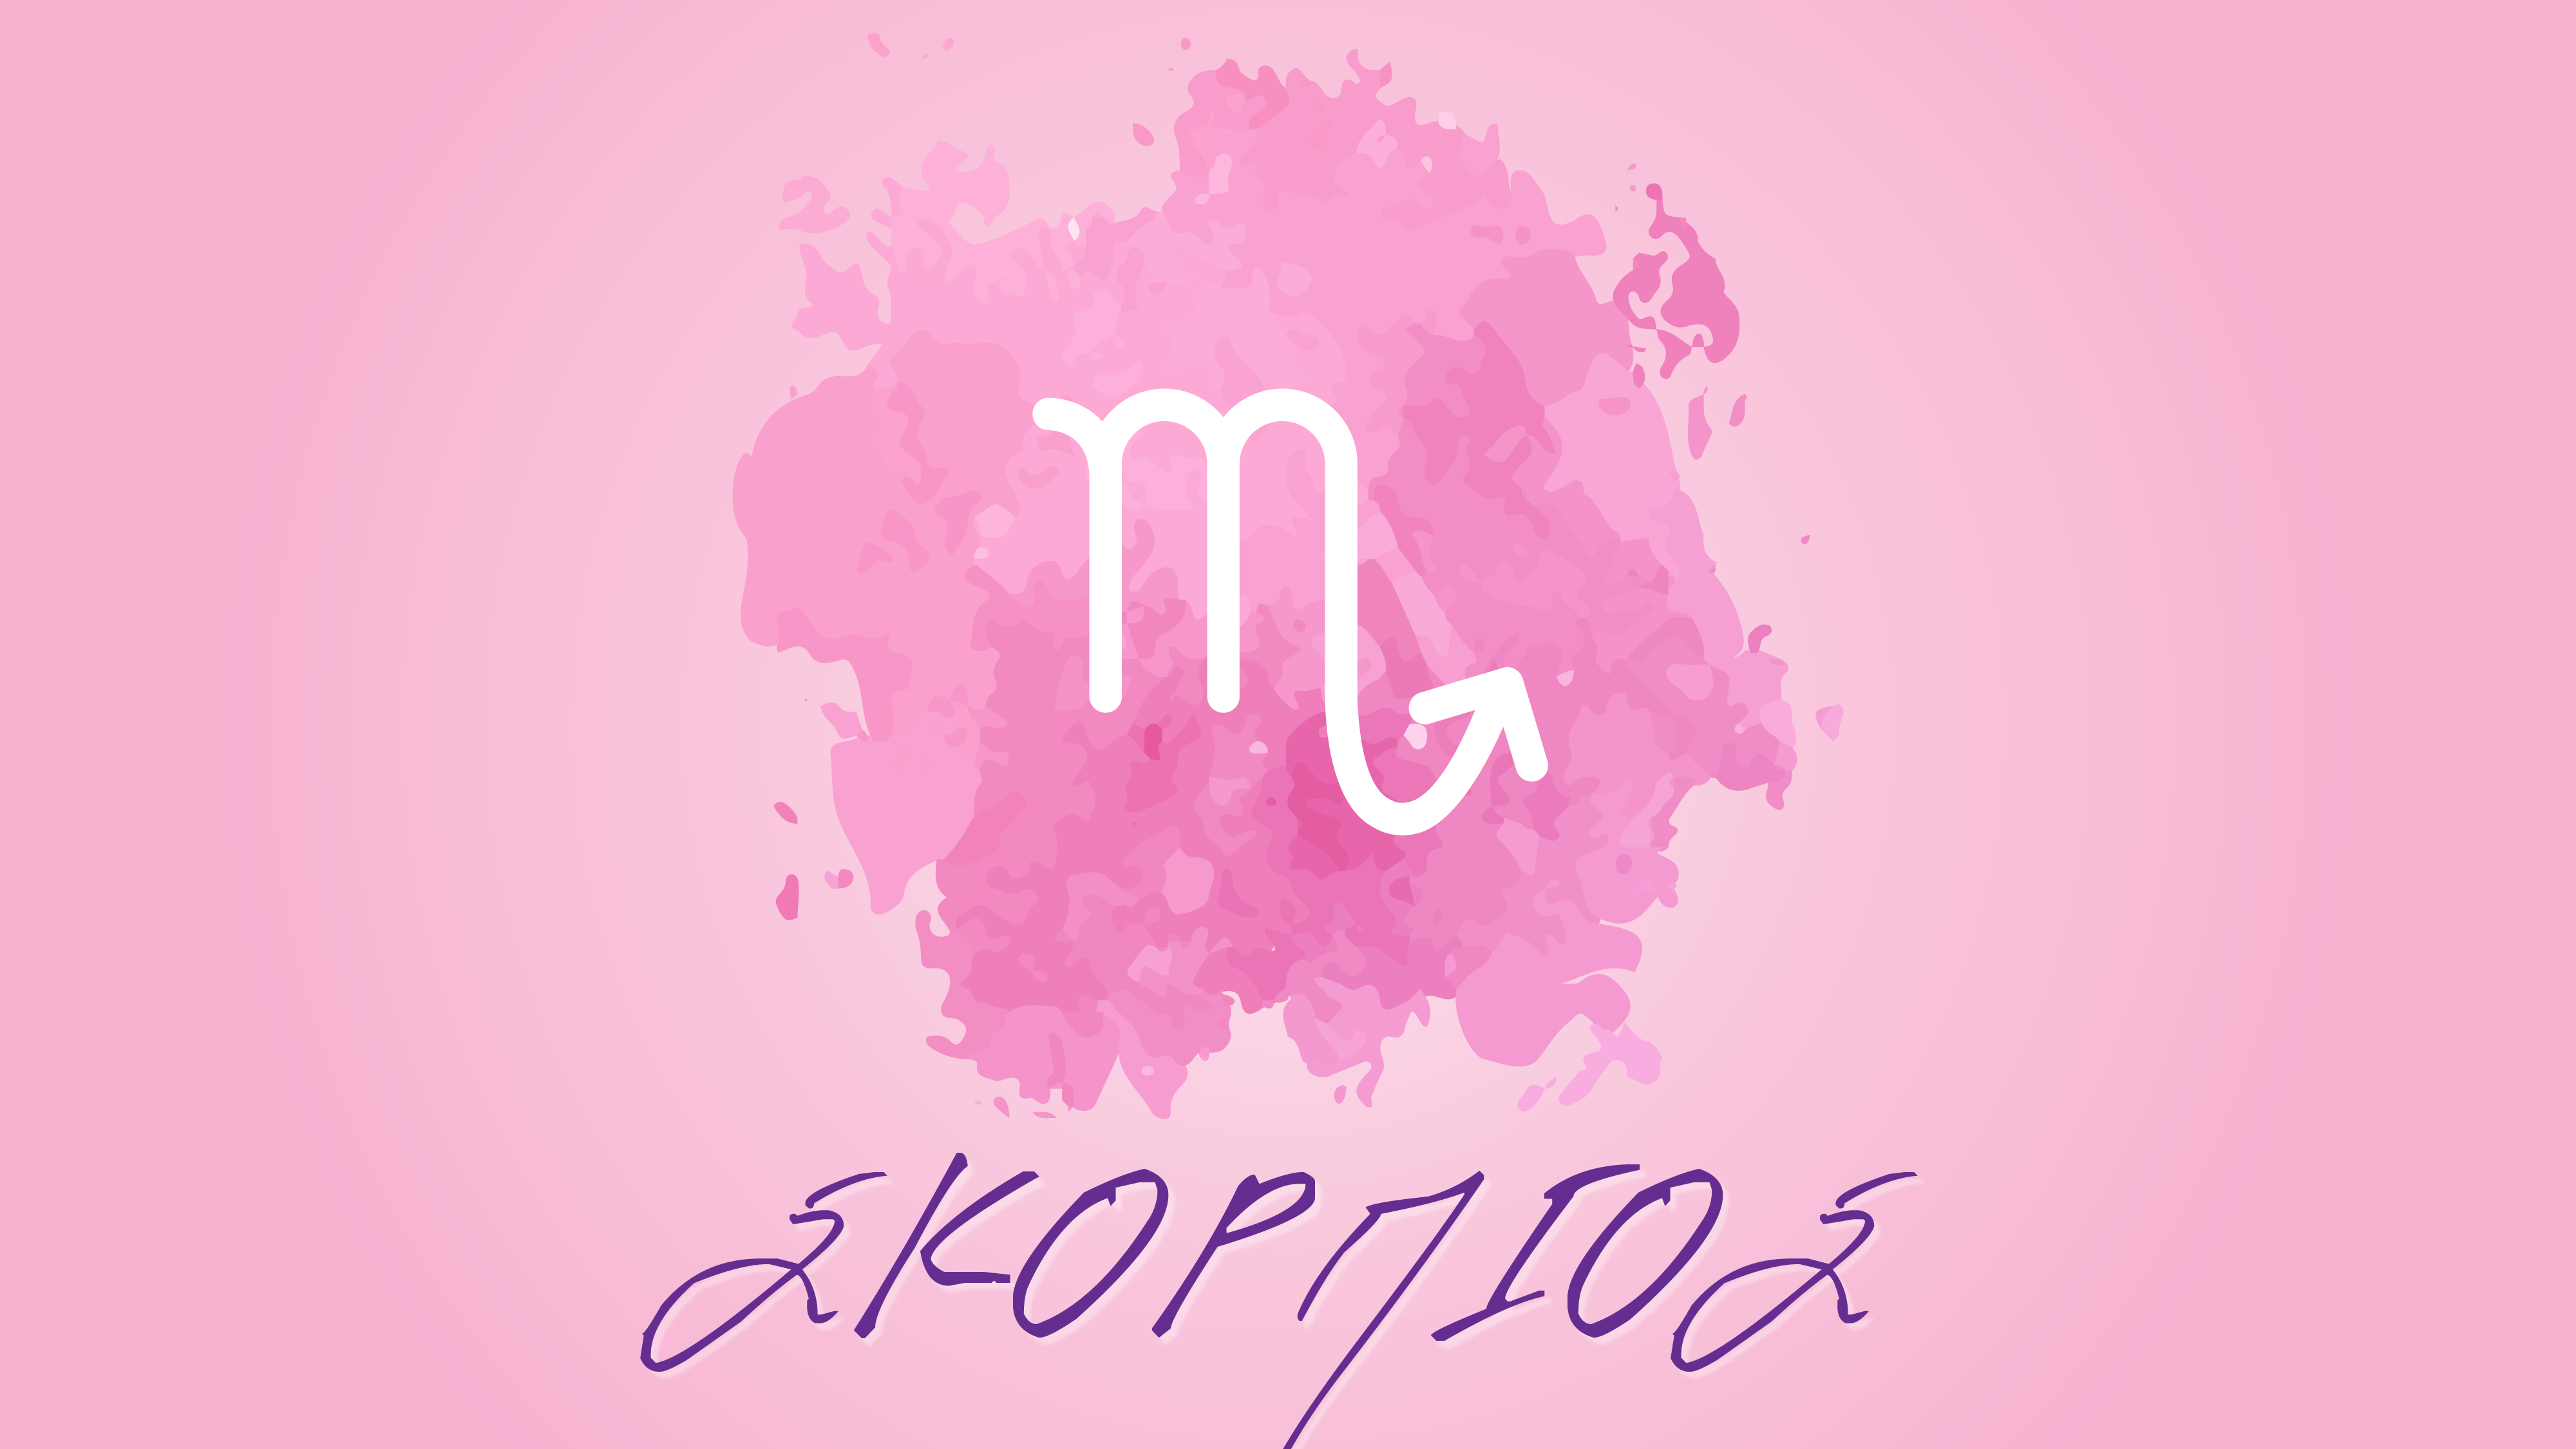 Σκορπιός- Μηνιαίες αστρολογικές προβλέψεις Σεπτεμβρίου 2021